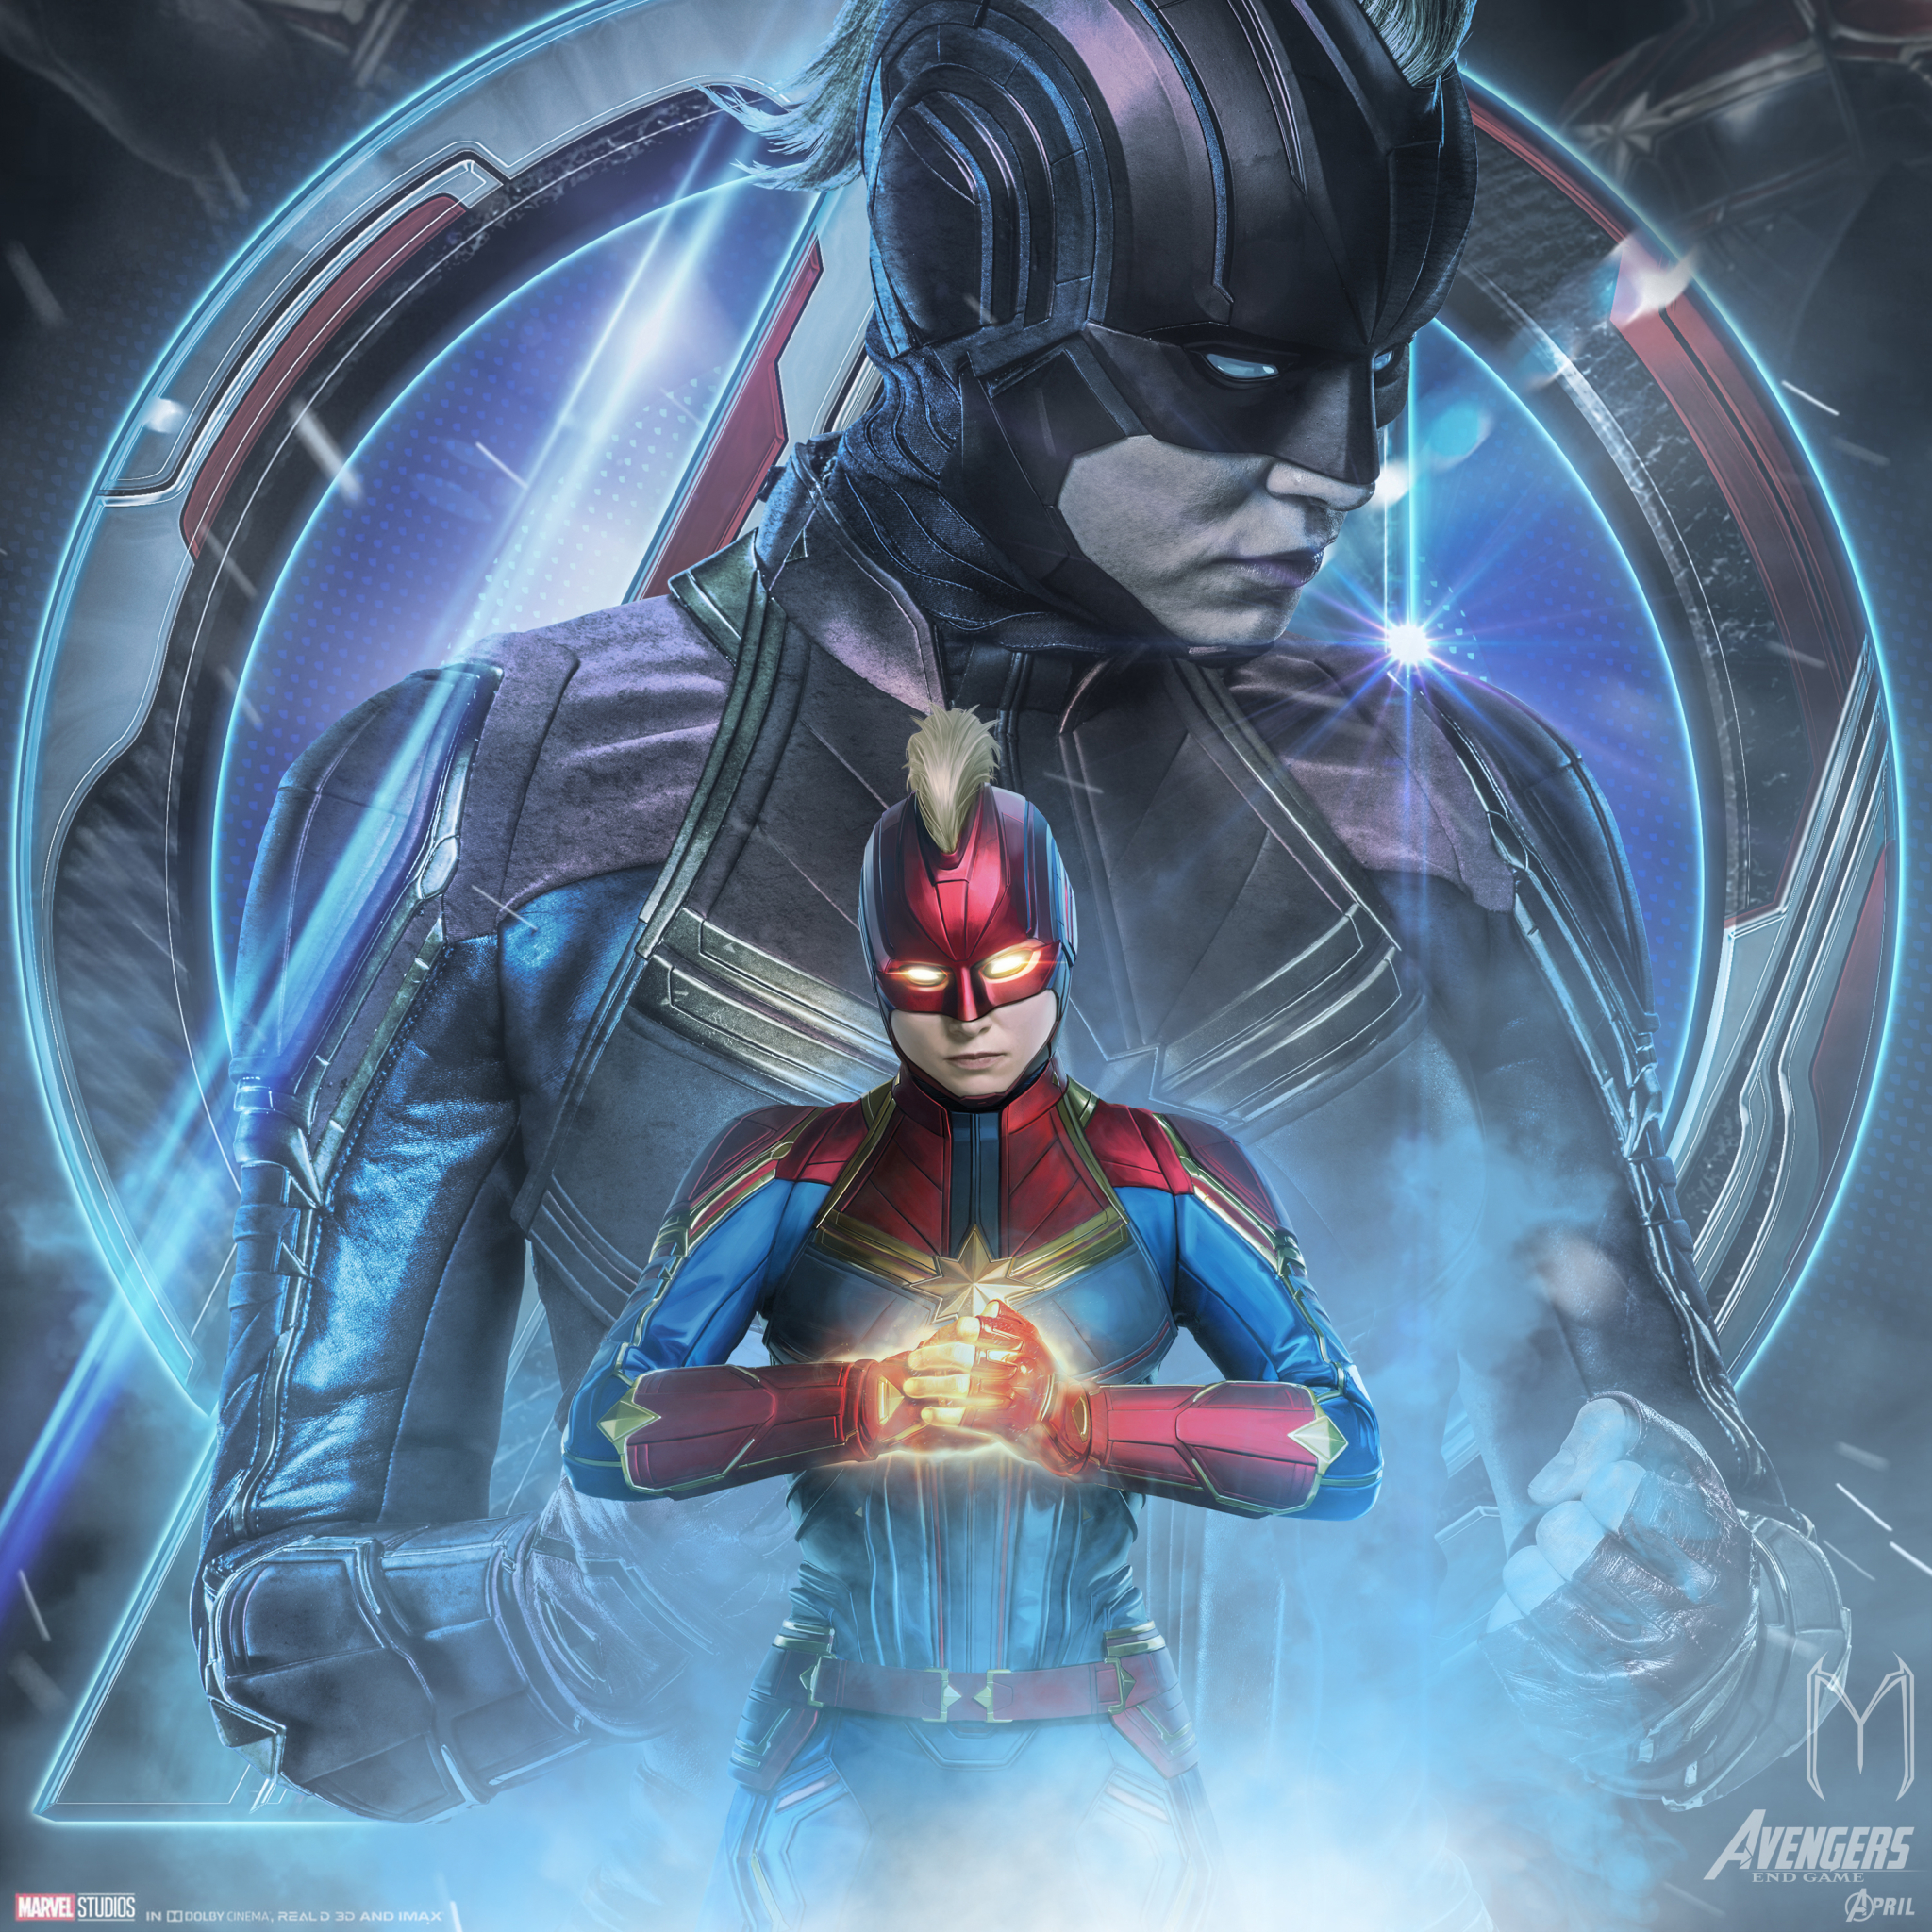 2048x2048 Avengers Endgame Captain Marvel Poster Art Ipad ...